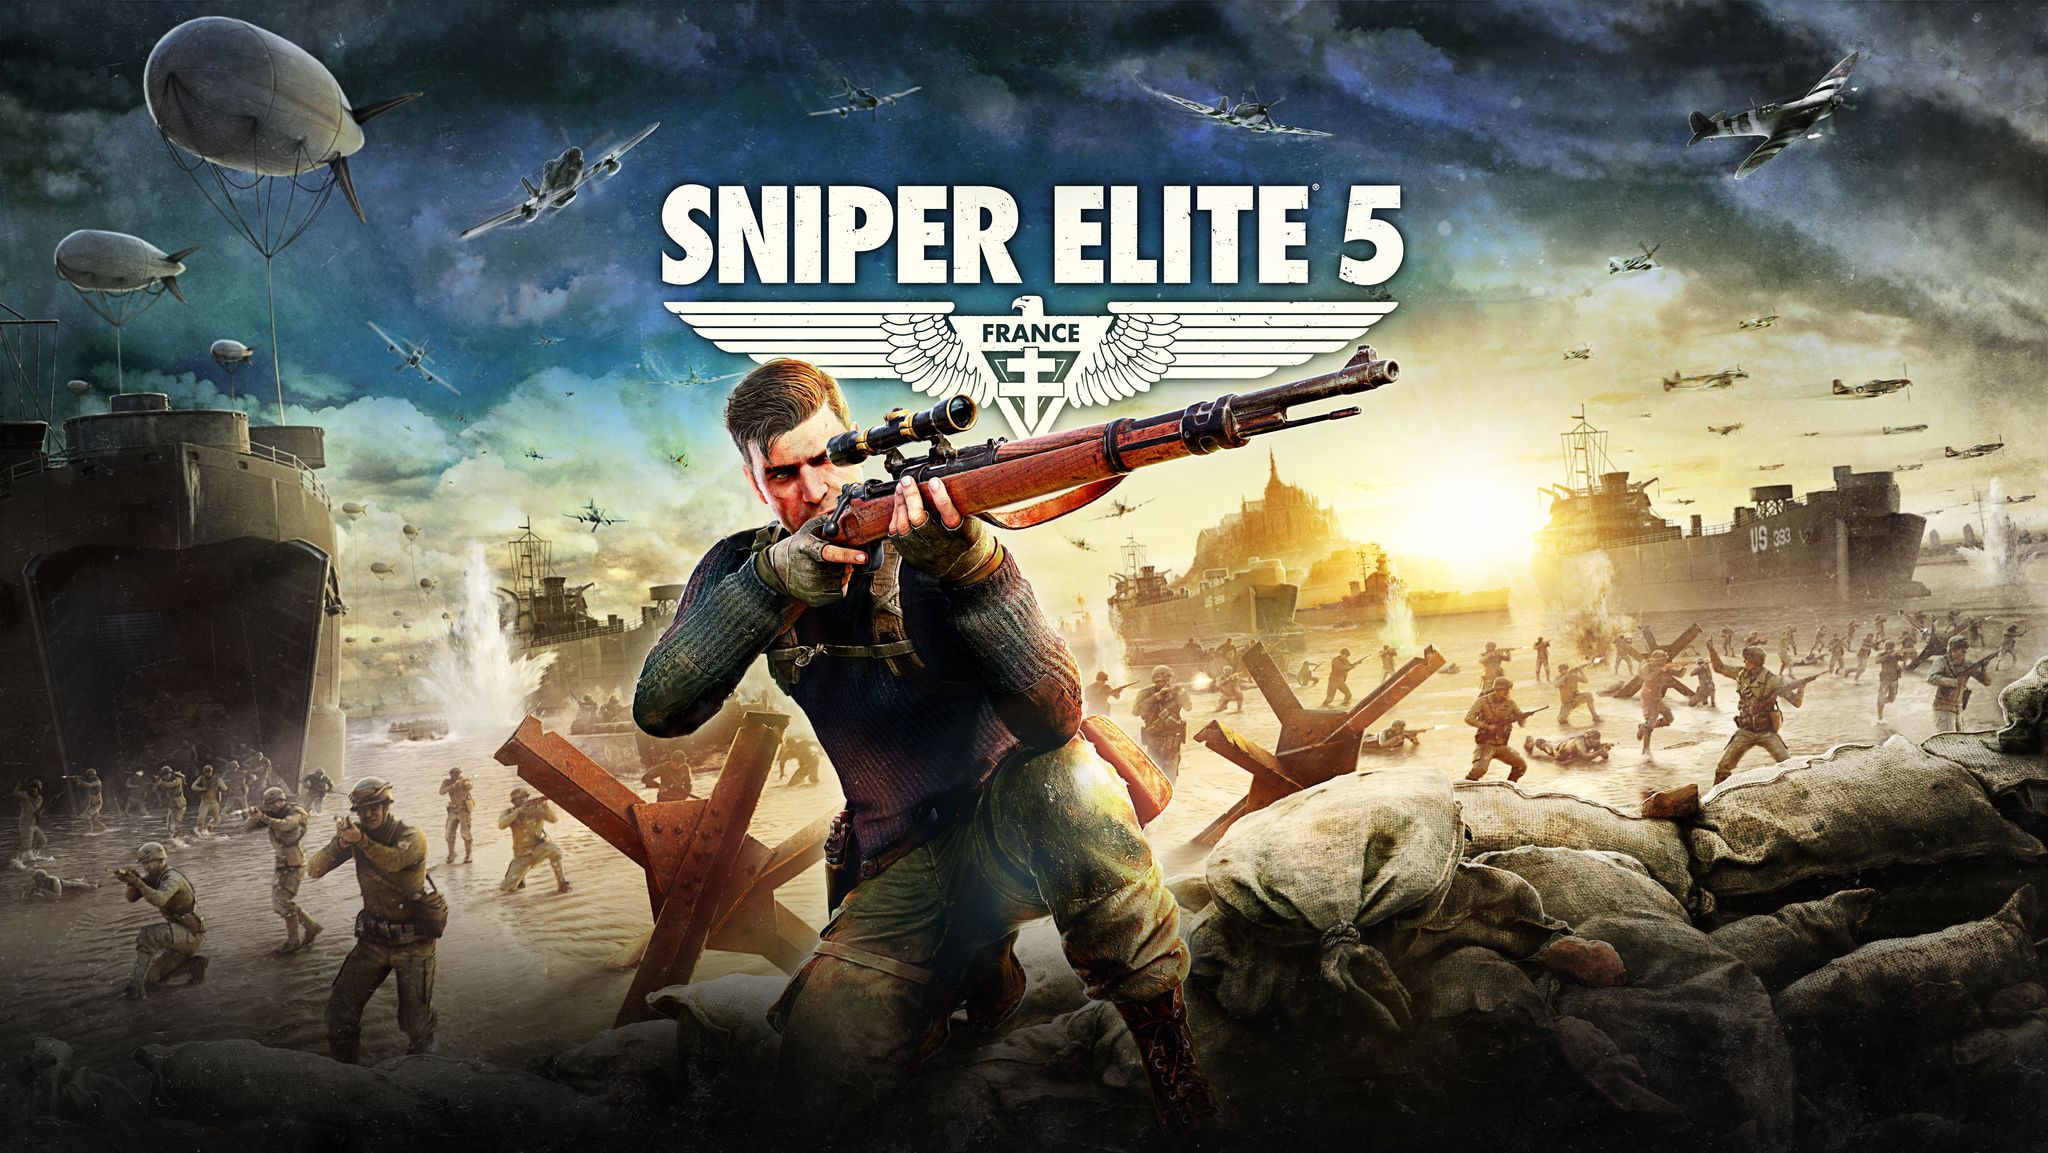 Melhores papéis de parede de Sniper Elite 5 para tela do telefone